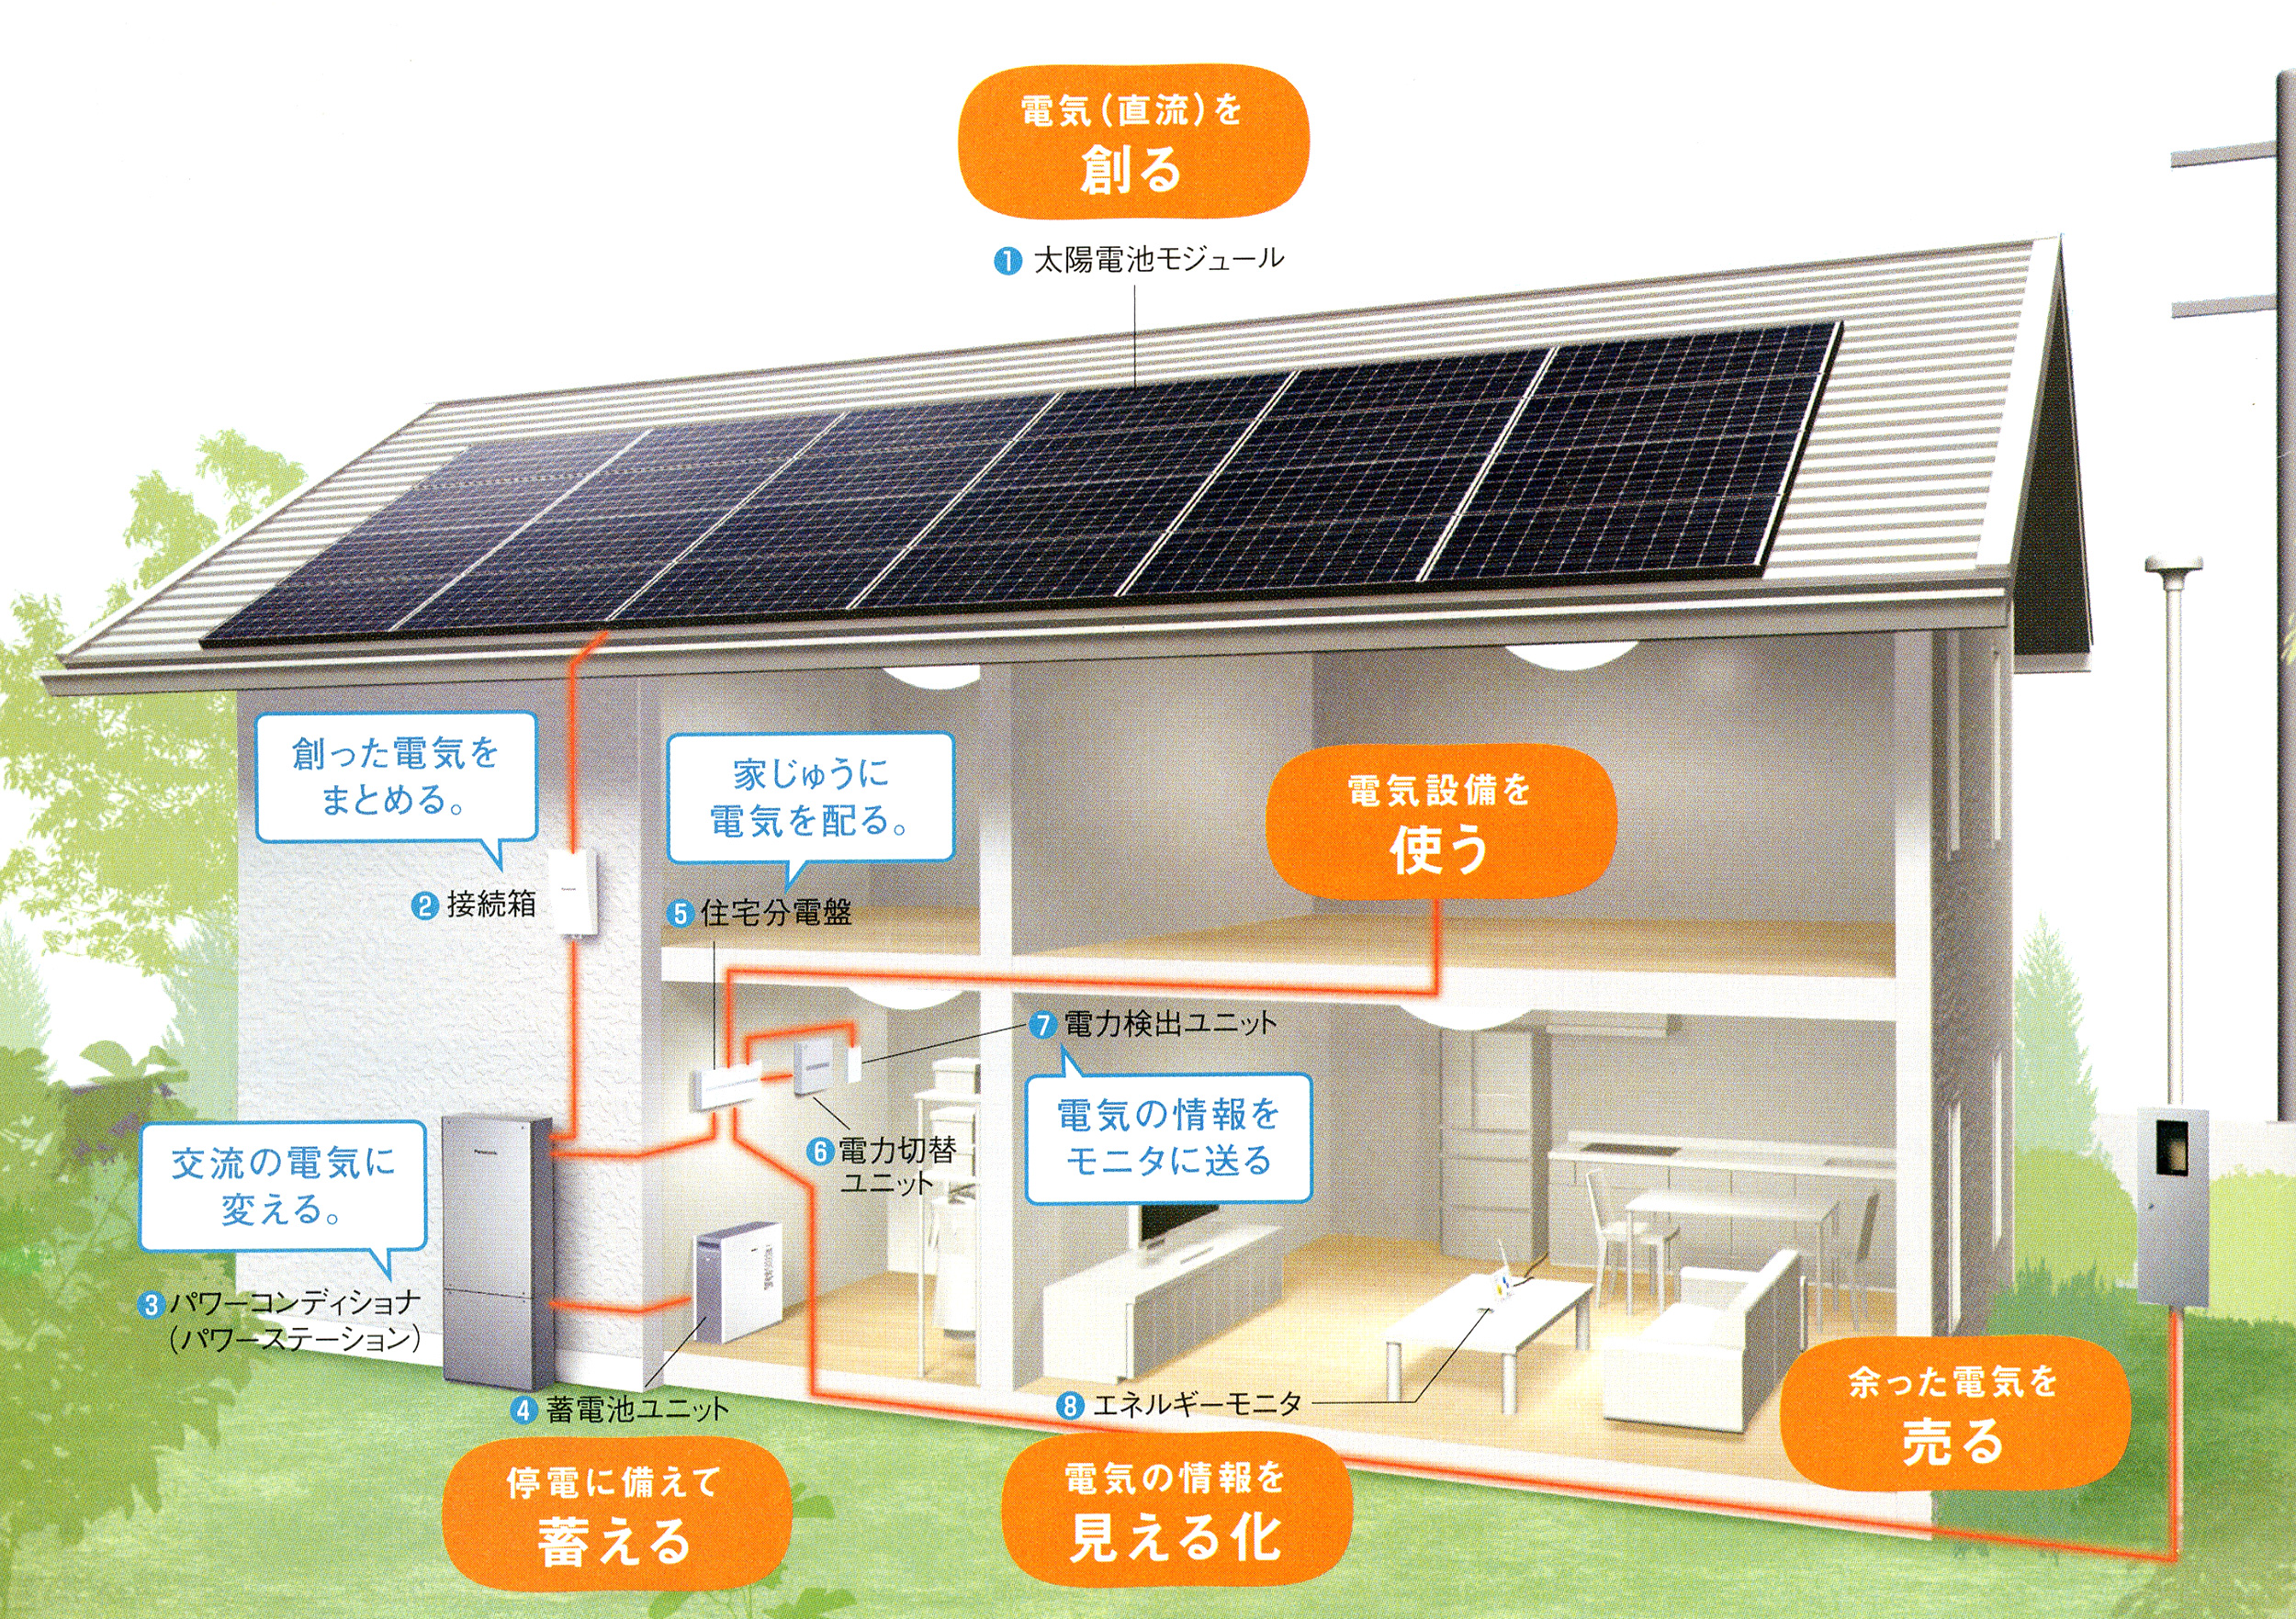 藤村機器 太陽光発電システム